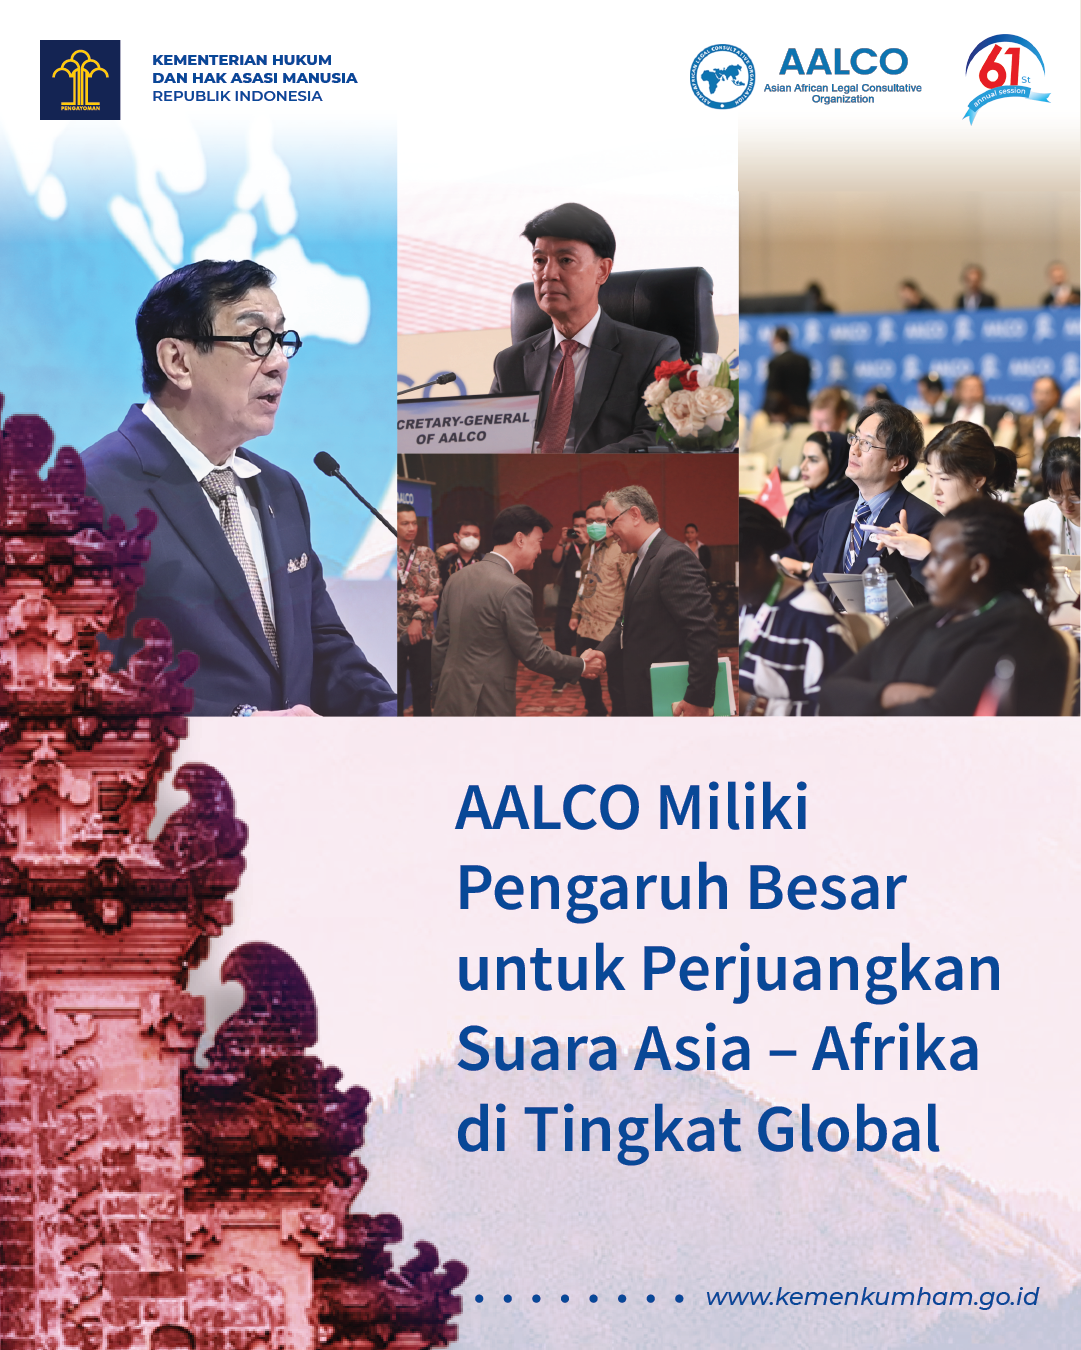 AALCO Miliki Pengaruh Besar Untuk Perjuangkan  Suara Asia – Afrika di Tingkat Global